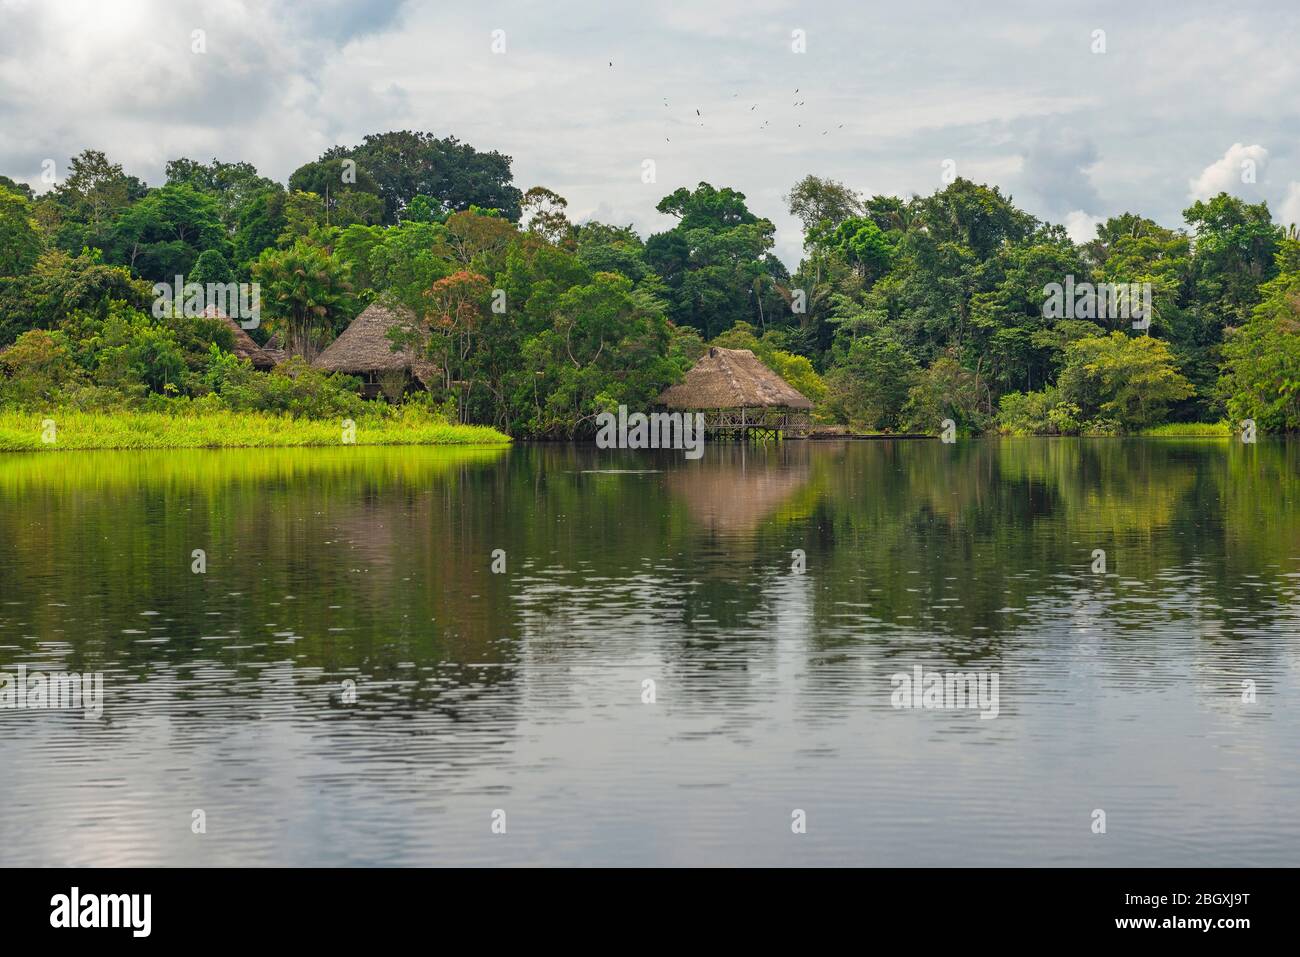 Amazon Rainforest Lodge Reflection. Die Amazonasregion umfasst Surinam, Guyana, Französisch Guyana, Venezuela, Kolumbien, Ecuador, Peru, Bolivien und Brasilien. Stockfoto